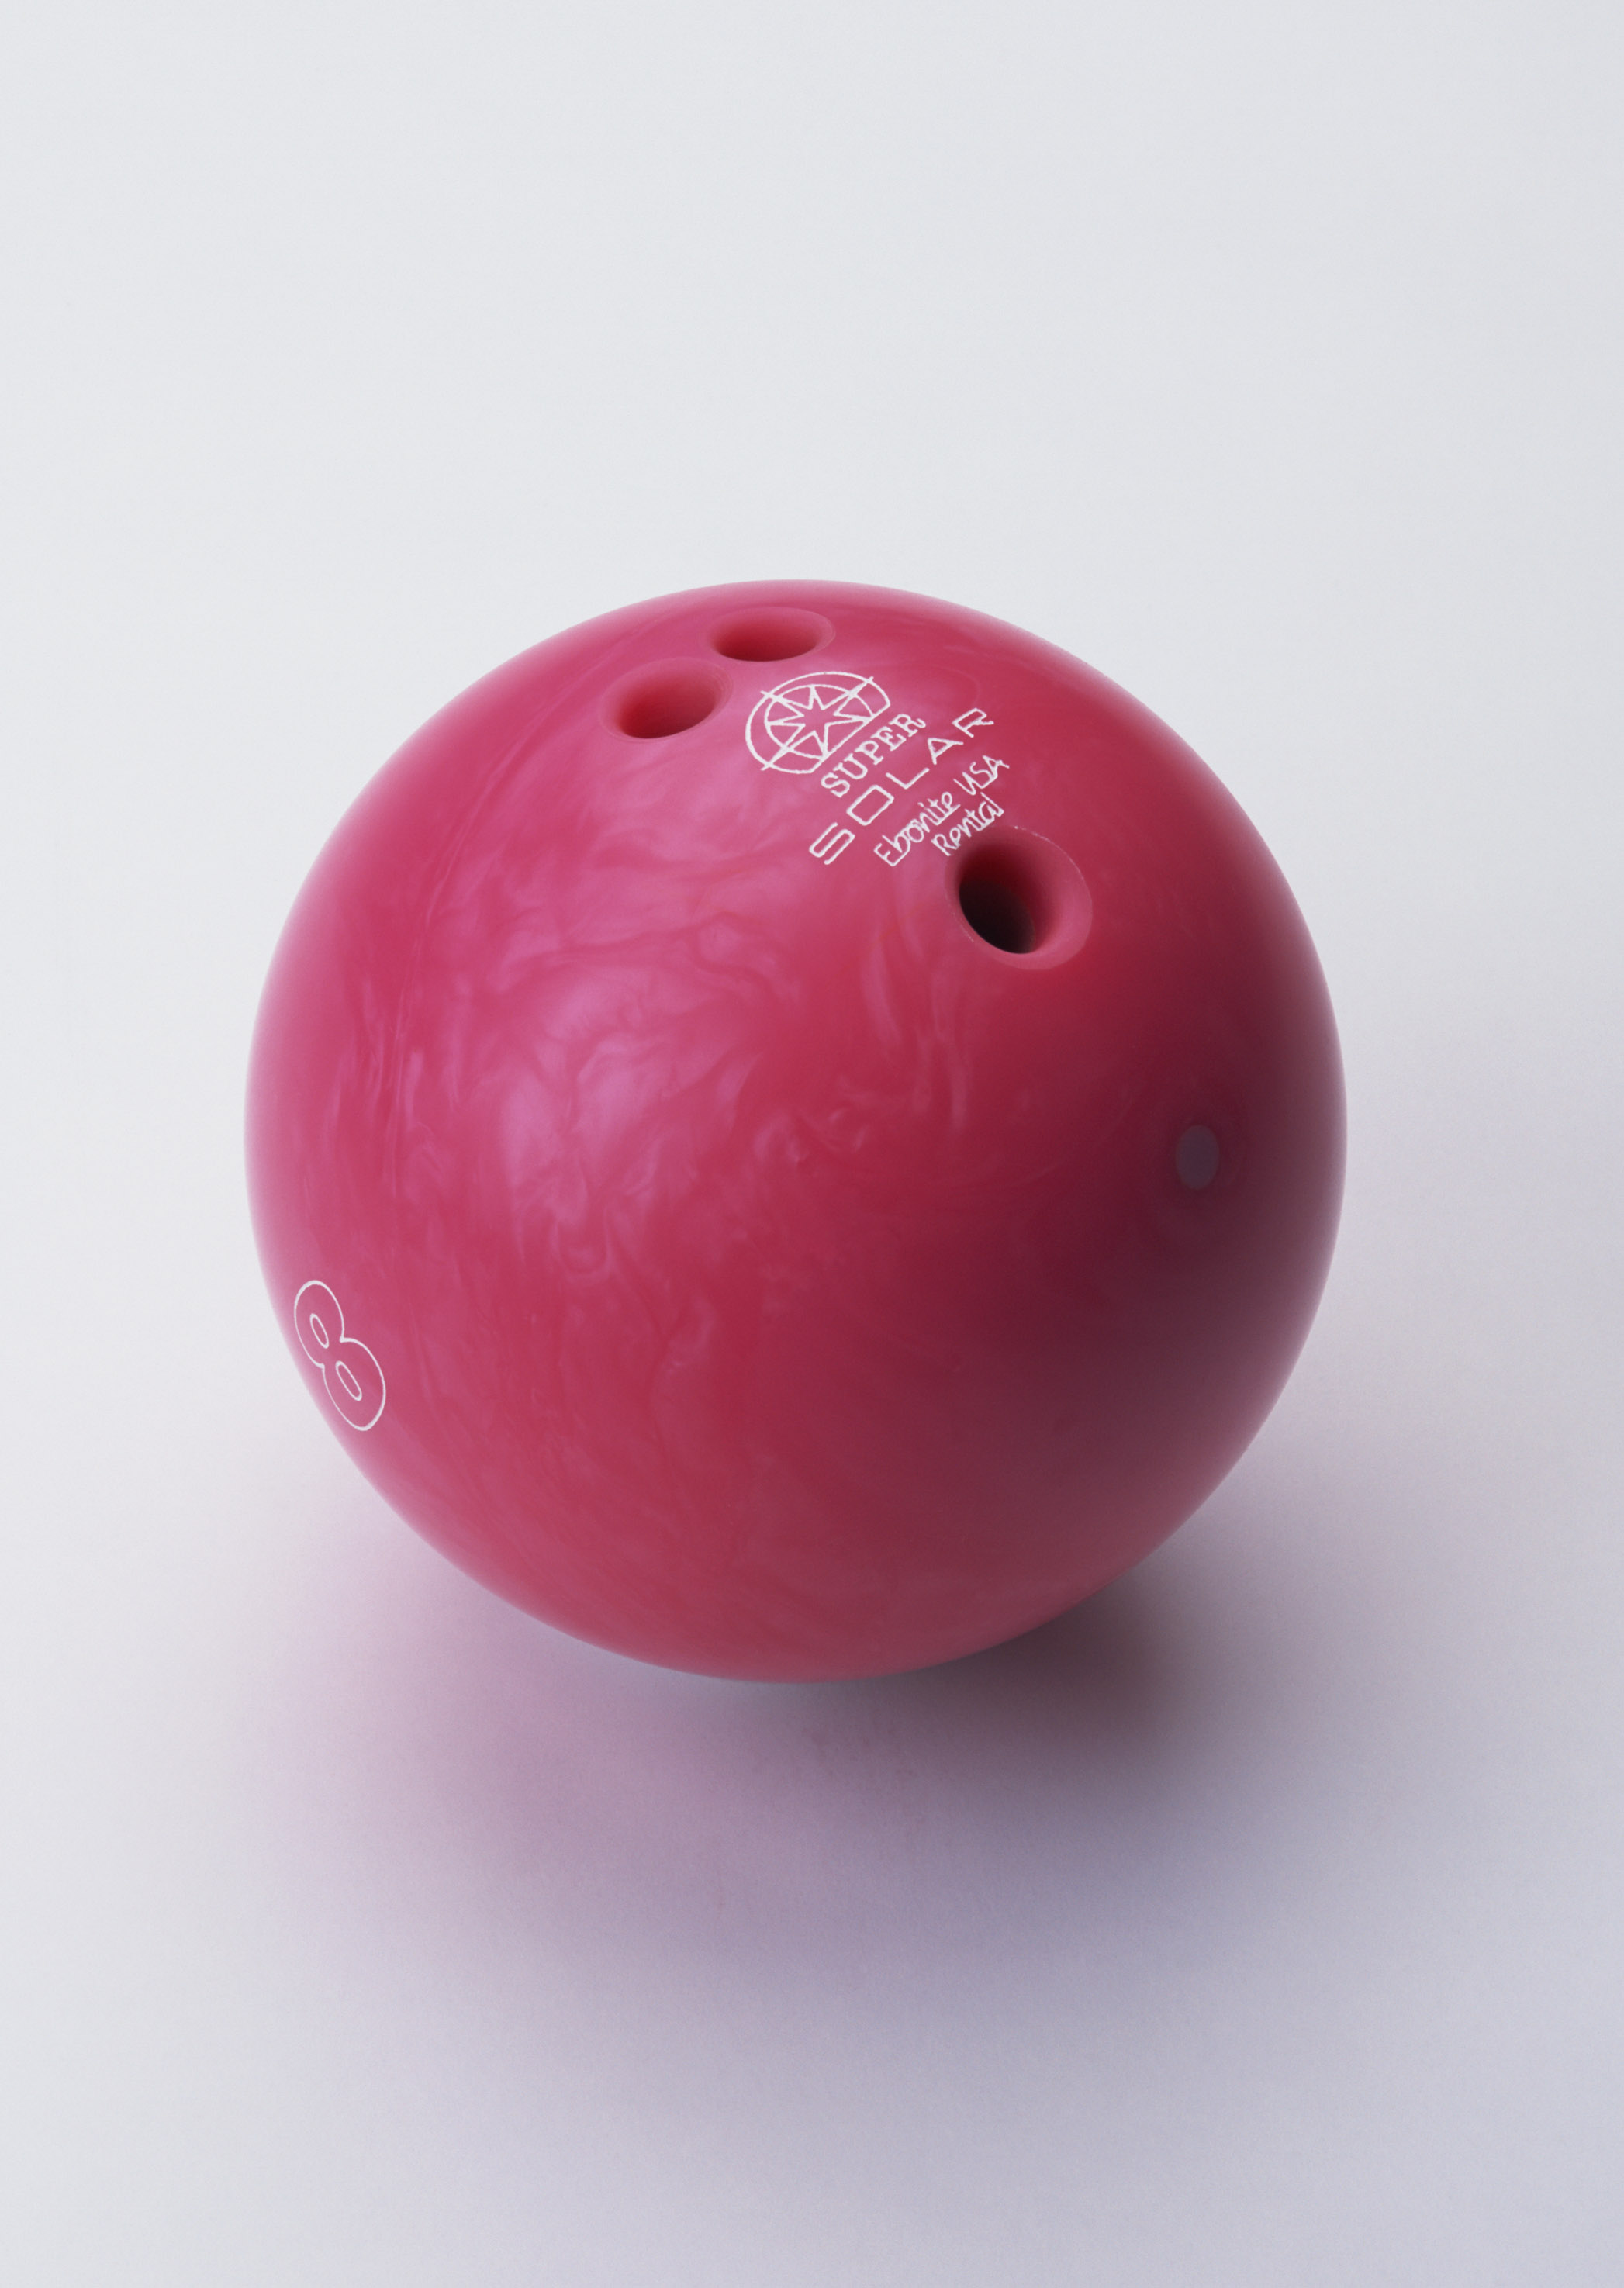 pink Bowling ball image